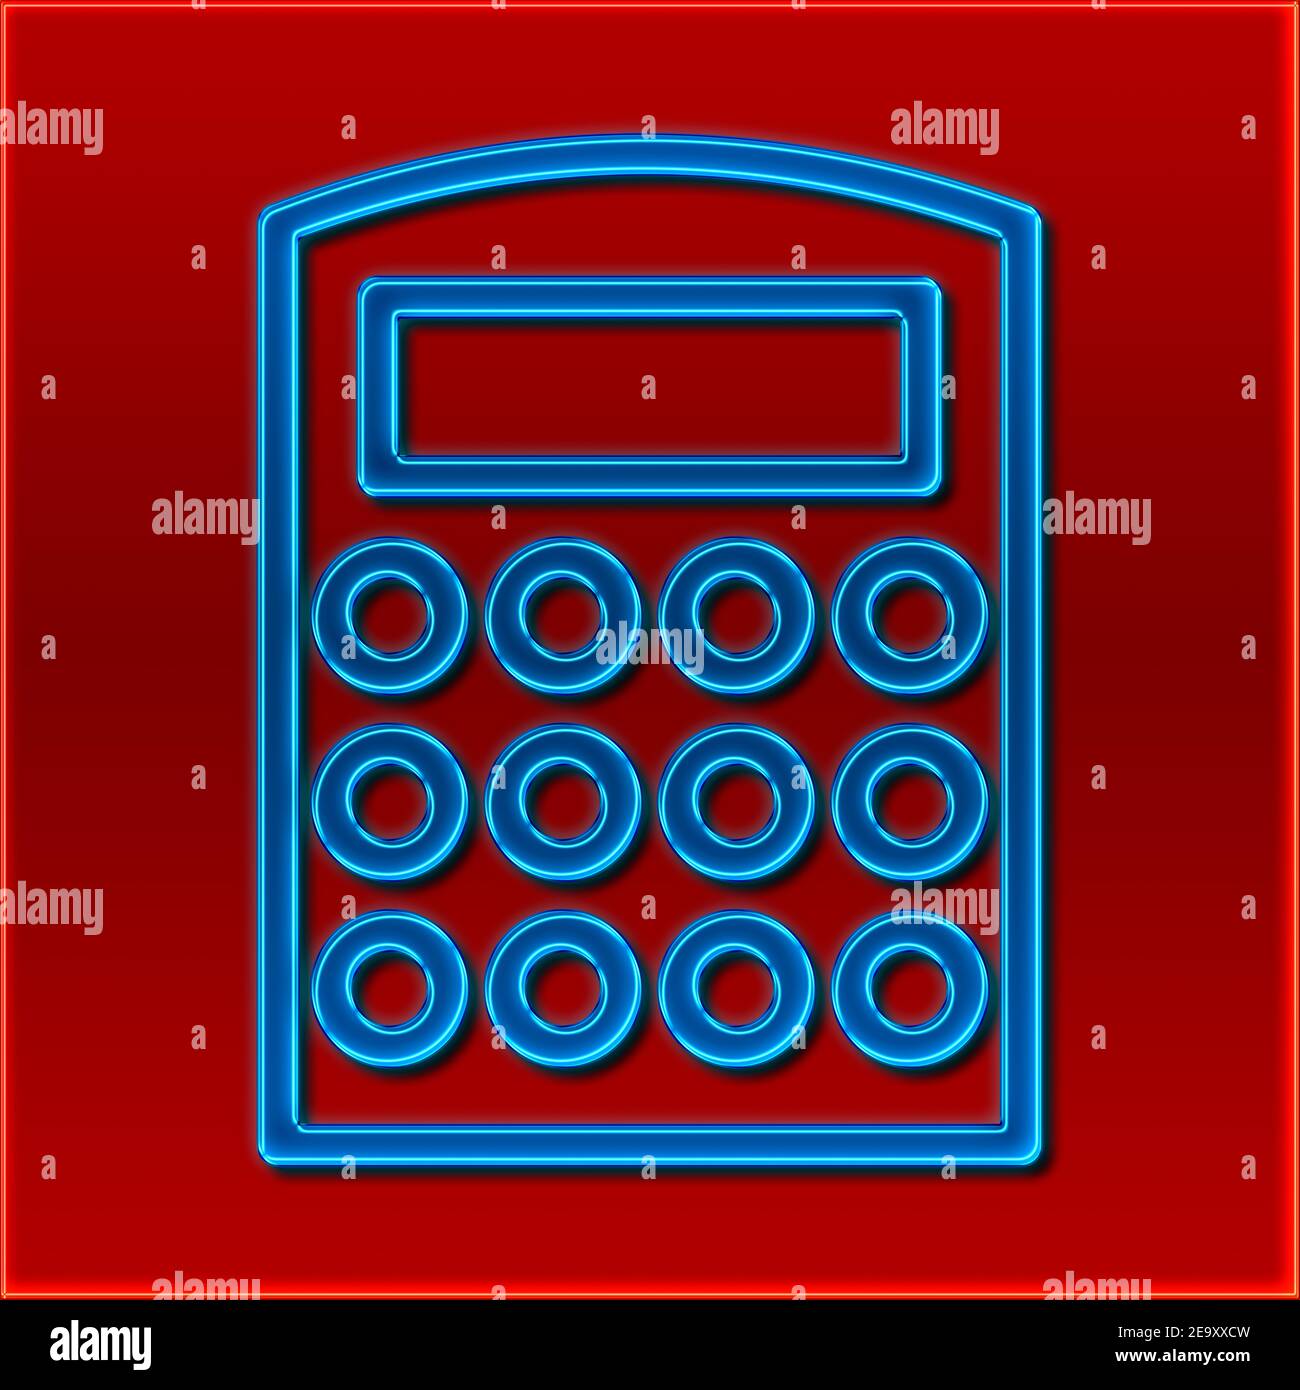 Vista dettagliata di una calcolatrice tascabile nel design di un cartello al neon Foto Stock